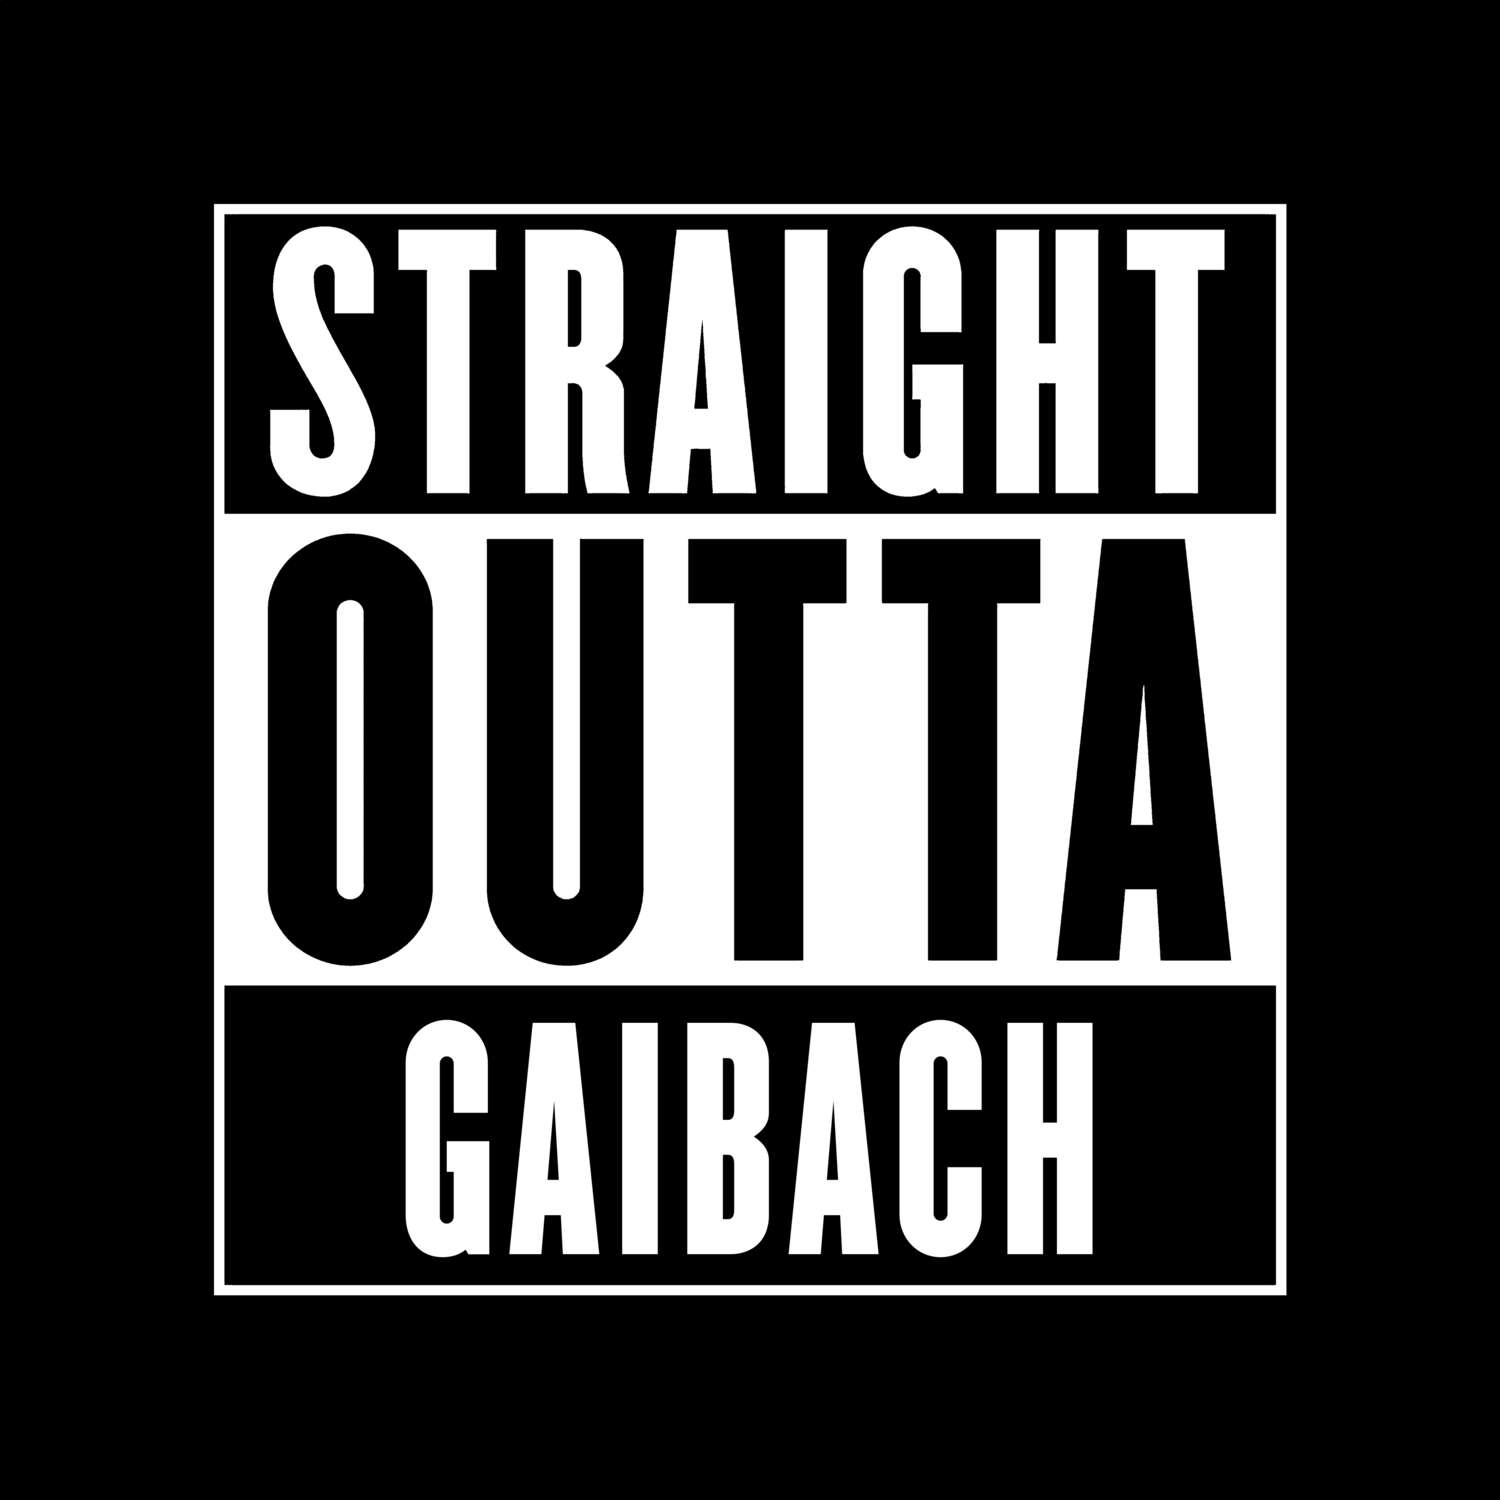 Gaibach T-Shirt »Straight Outta«